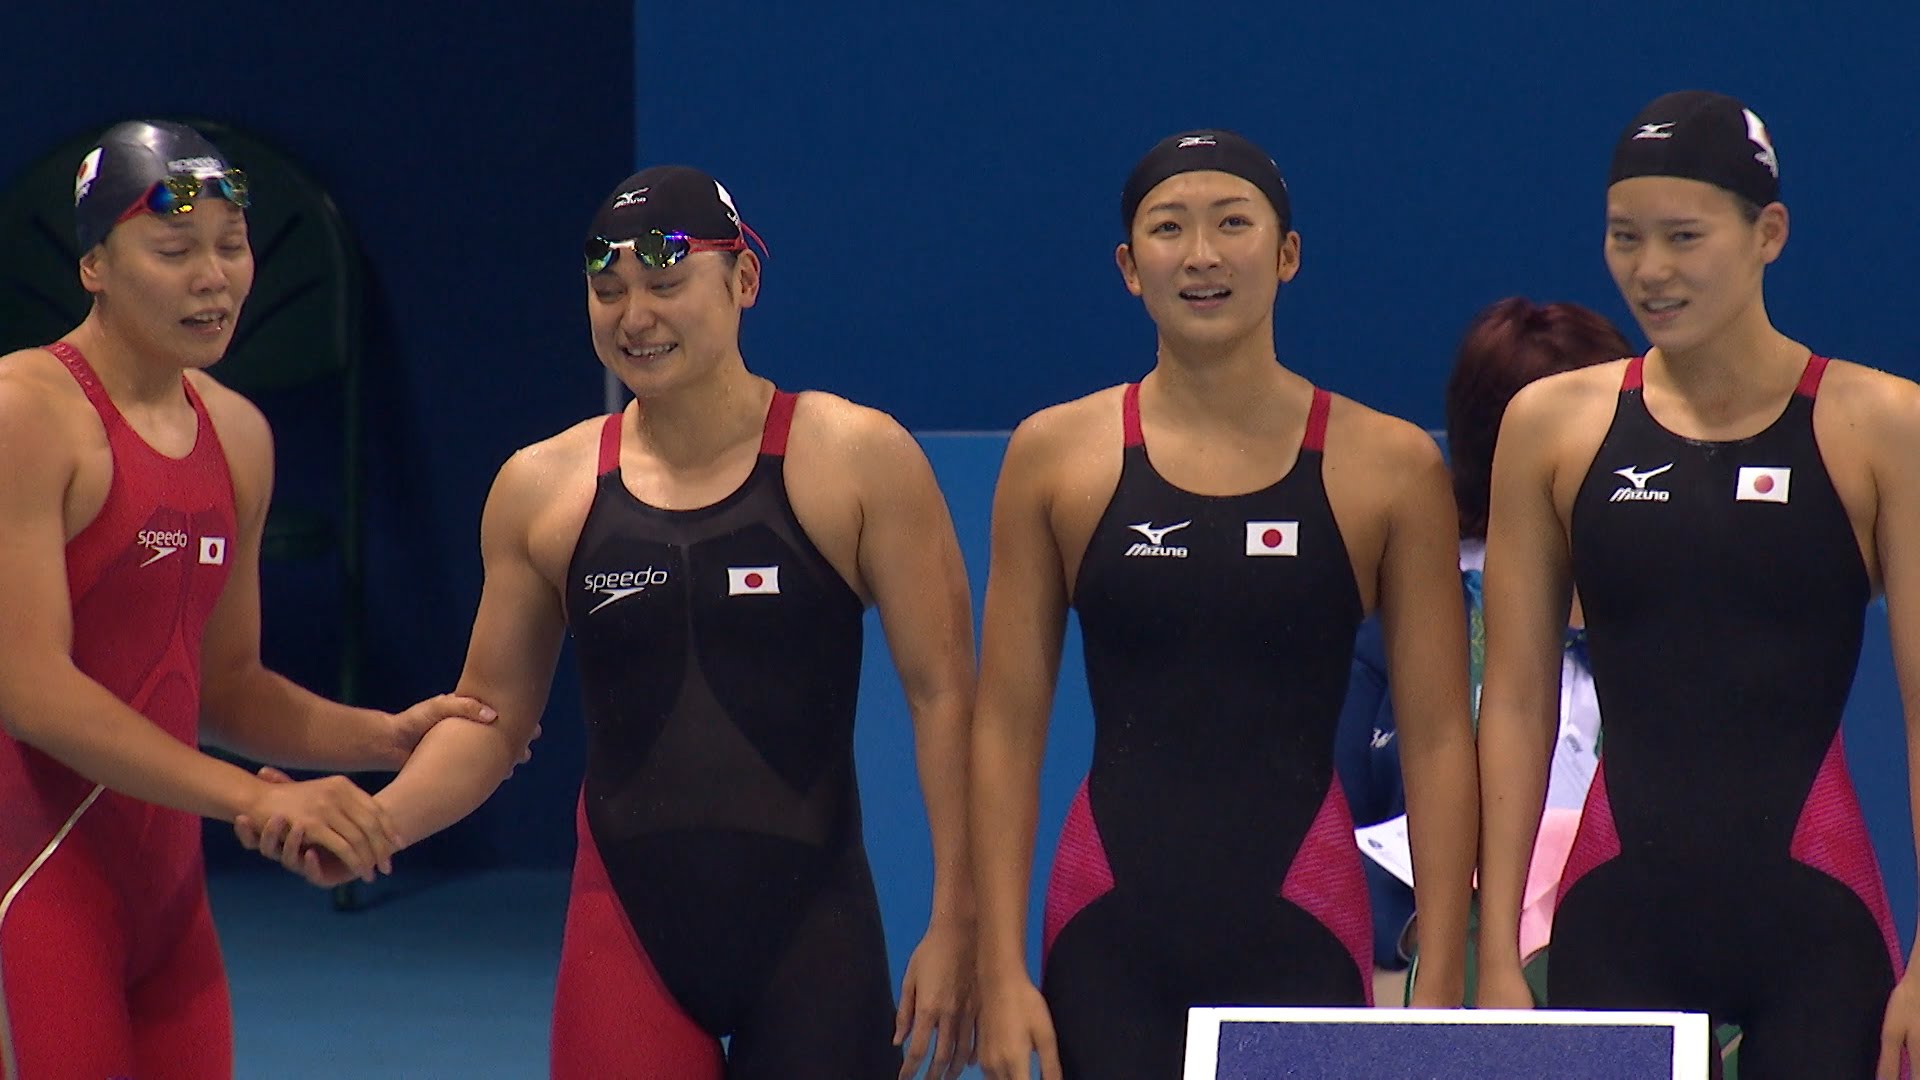 【NHKリオ】競泳 女子400mリレー 日本は8位 ※インタビューに注目※ - YouTube